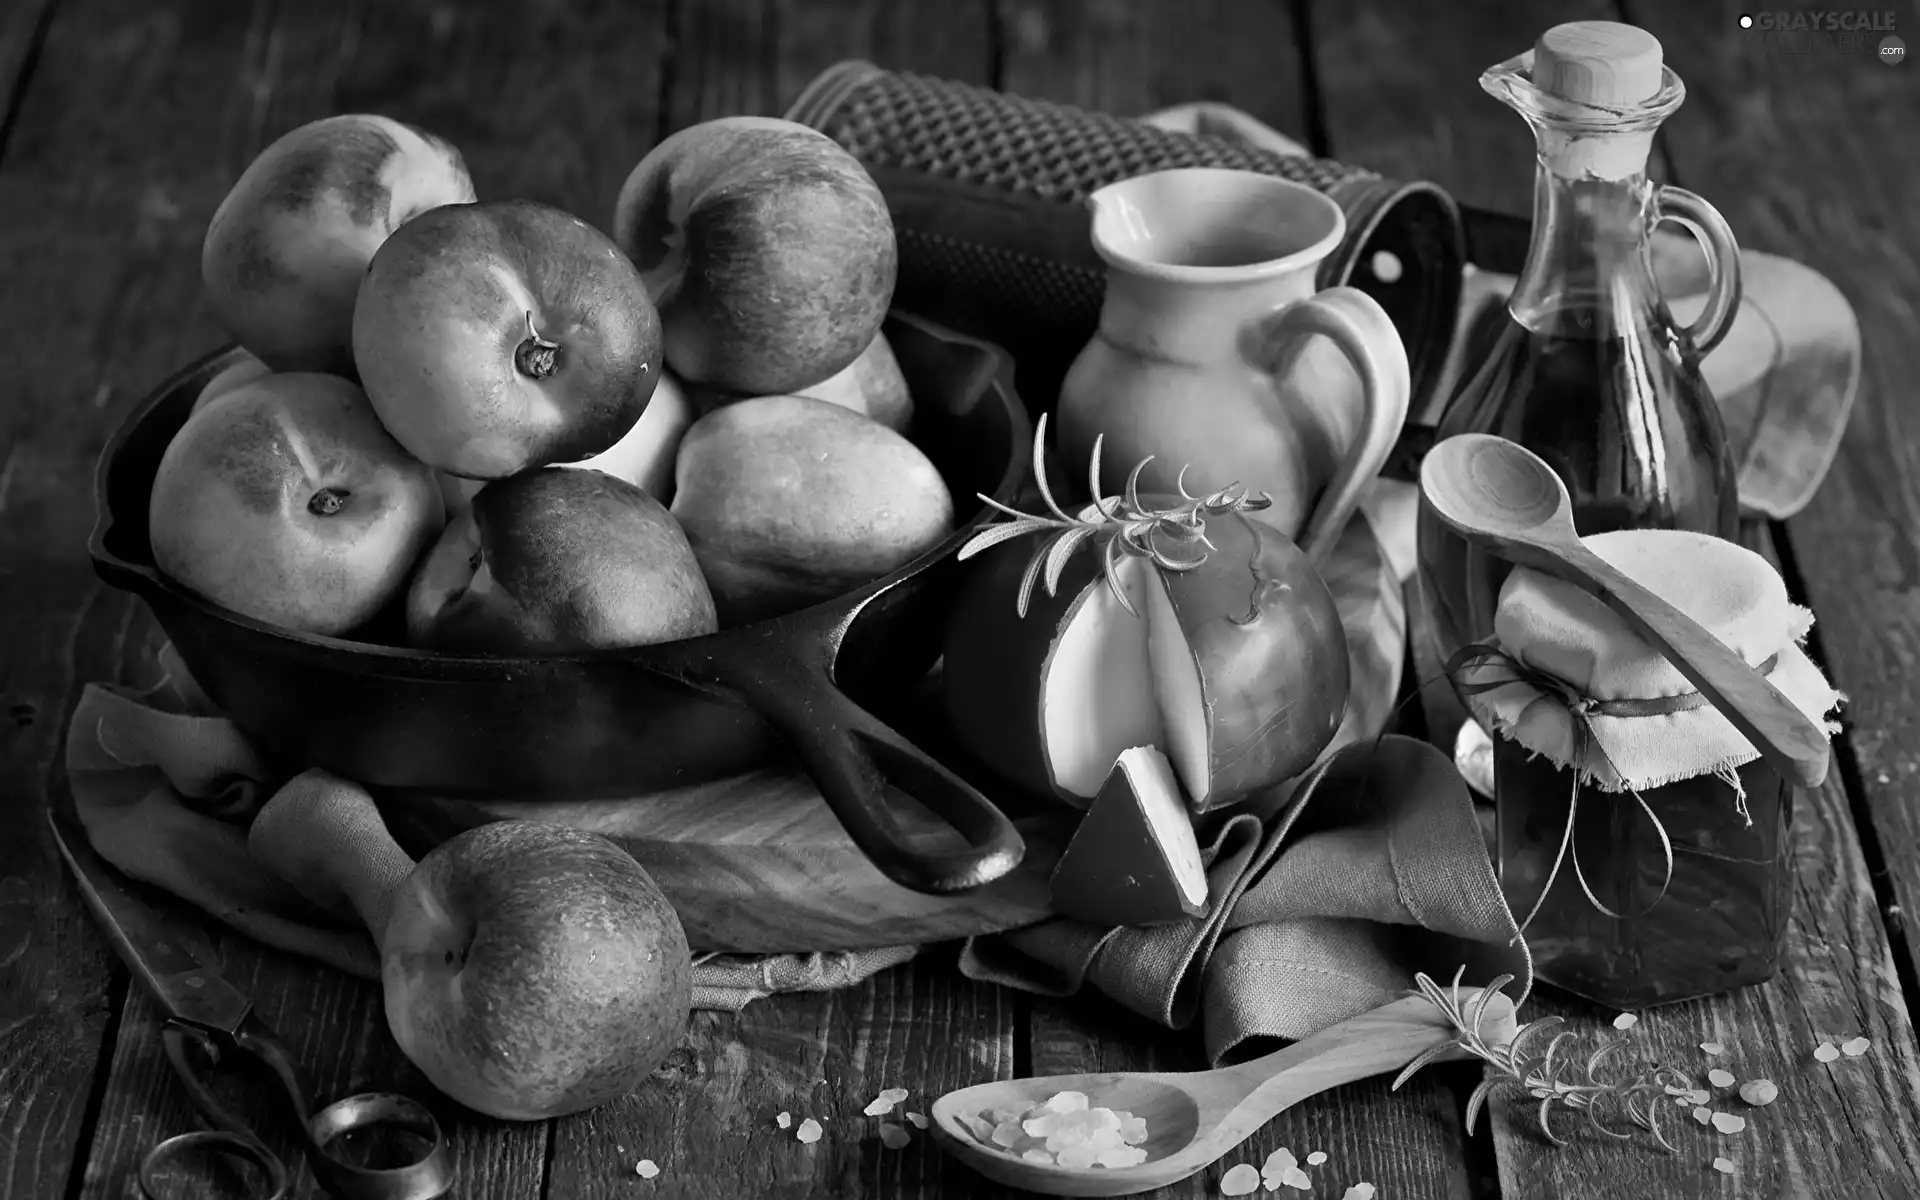 honey, apples, wood, Spoons, jug, frying pan